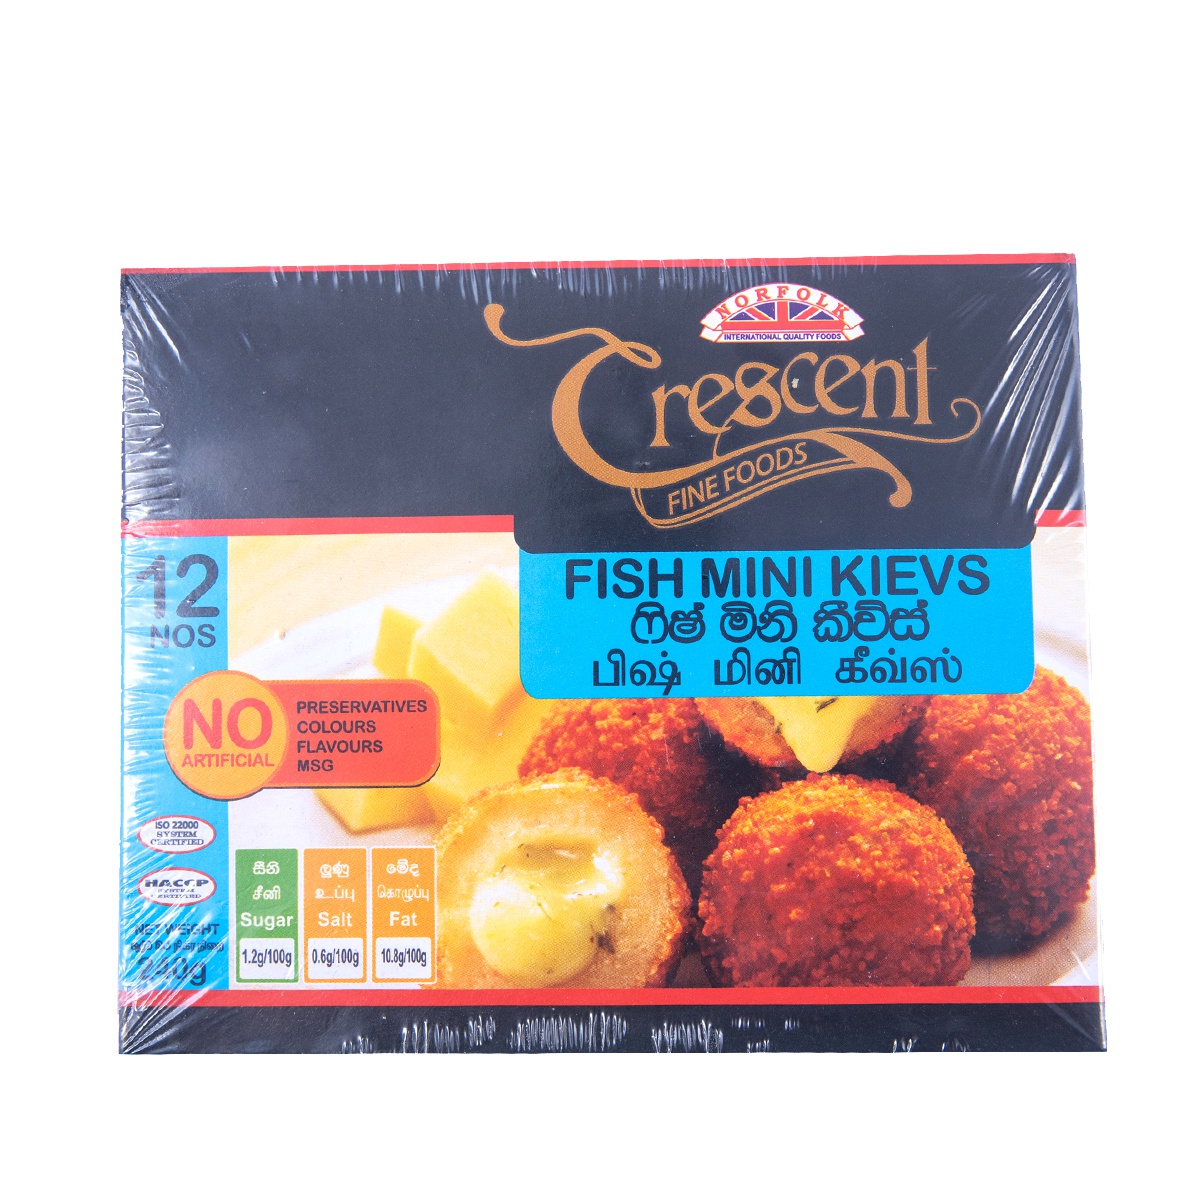 Crescent Fish Mini Kieves 240G - CRESCENT - Frozen Ready To Cook Snacks - in Sri Lanka